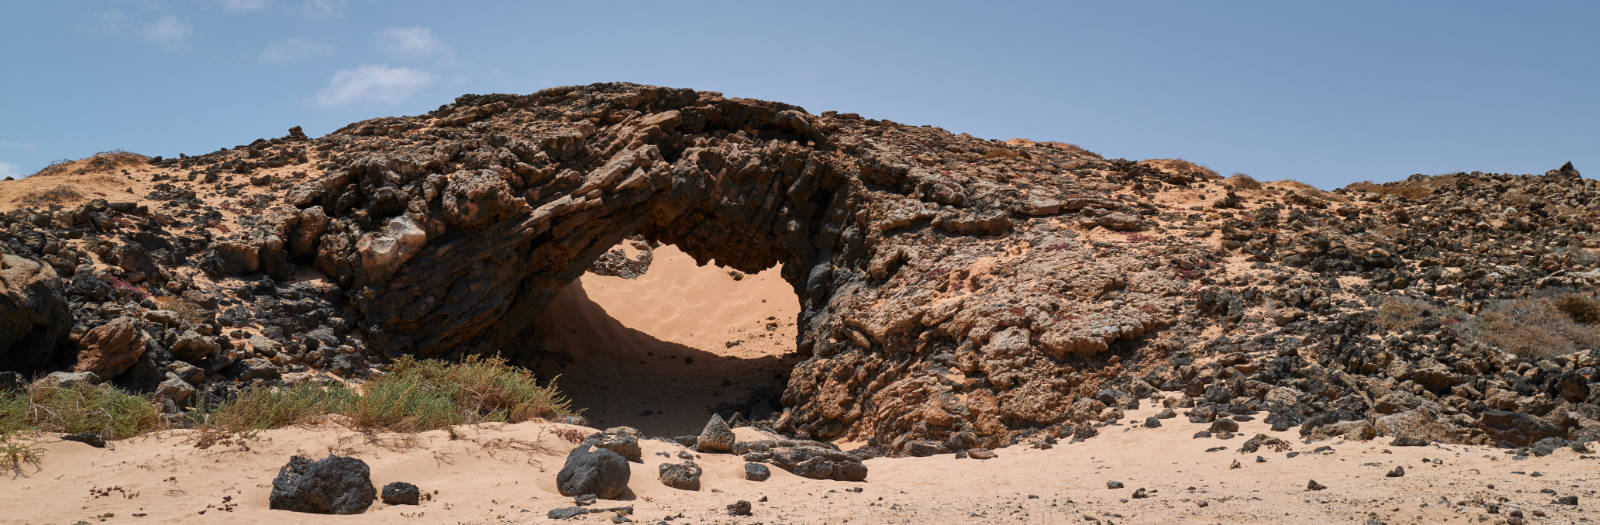 Cueva del Dinero Fuerteventura.